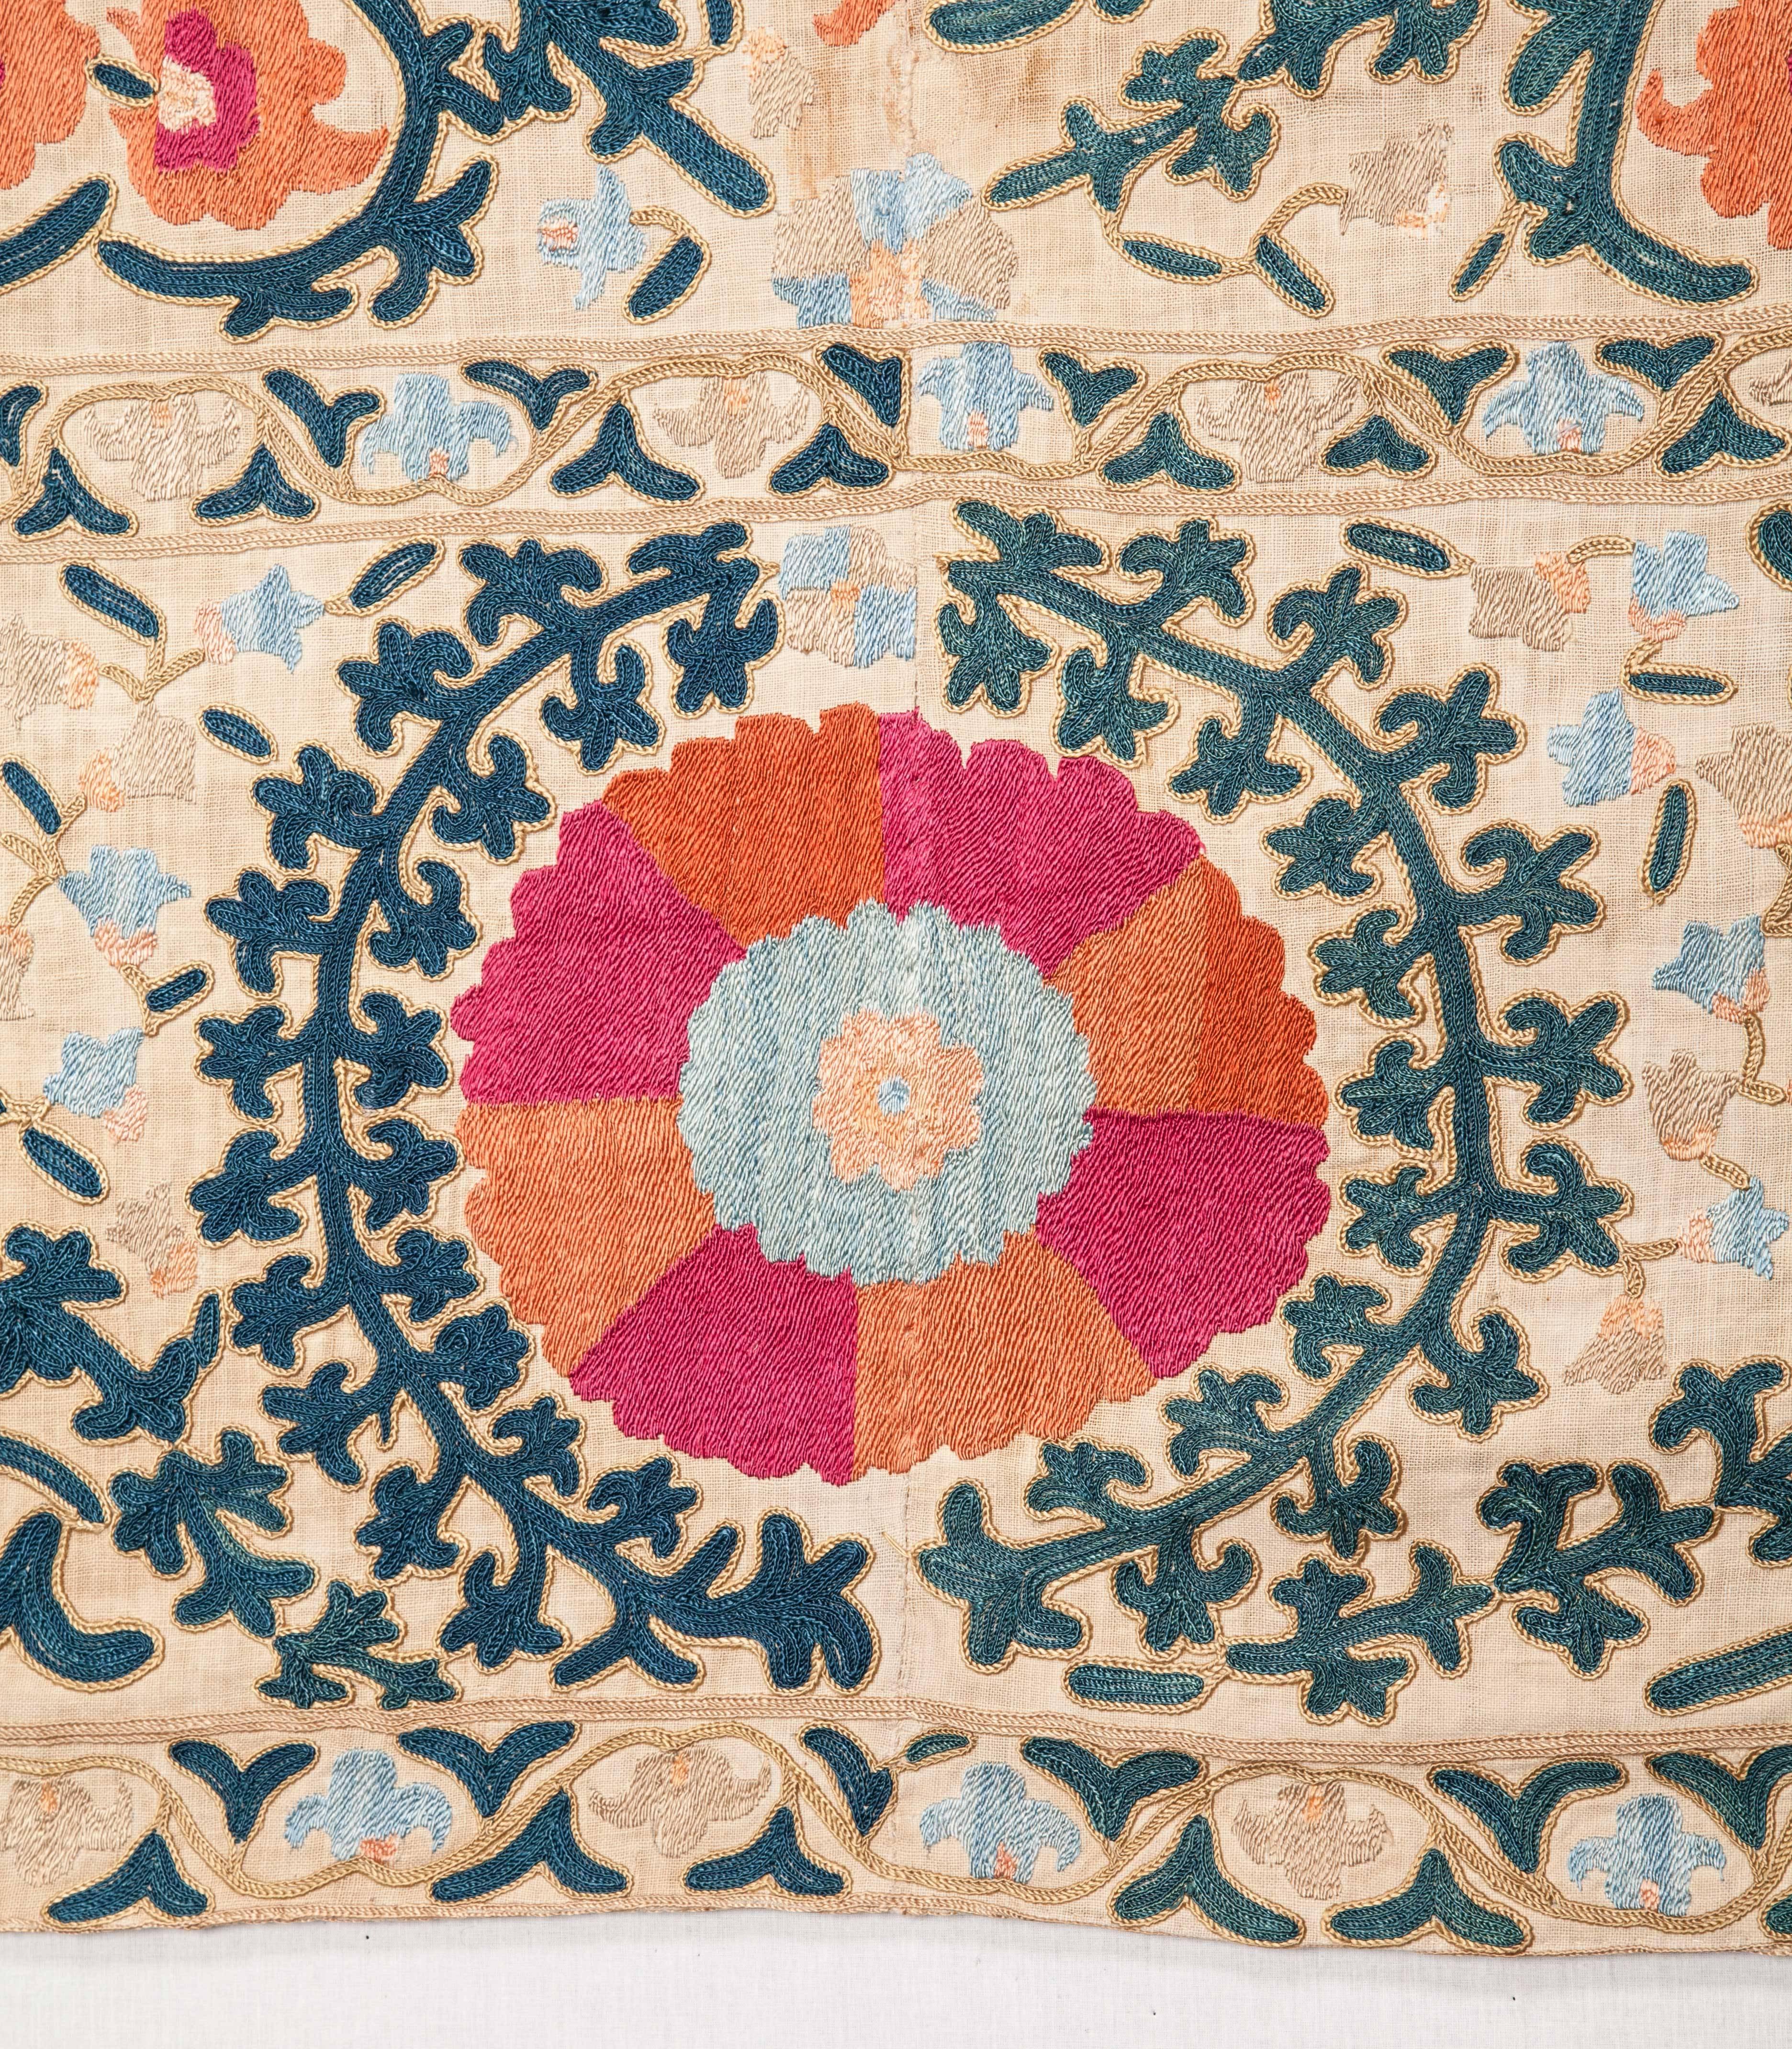 Cotton 19th Century Uzbek Bukhara Suzani